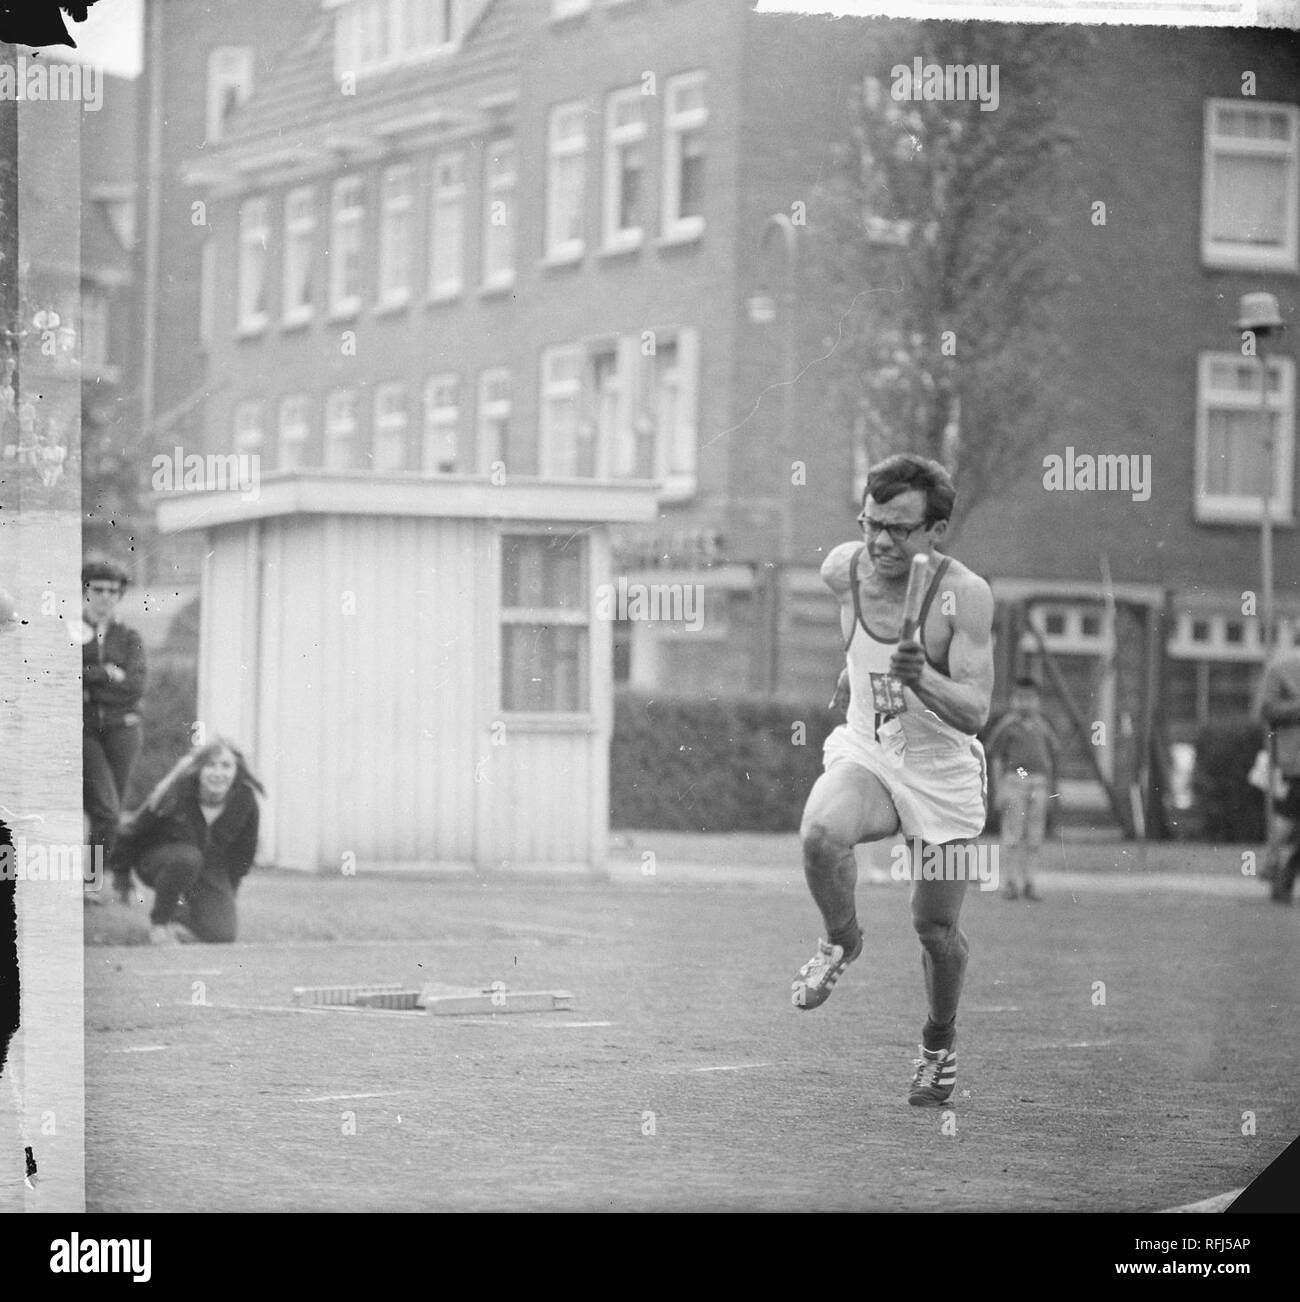 Atletiek op de Sintelbaan, Ferry Lamie liep 100 mètre de 10,8 seconden rencontré veel , Bestanddeelnr 917-8038. Banque D'Images